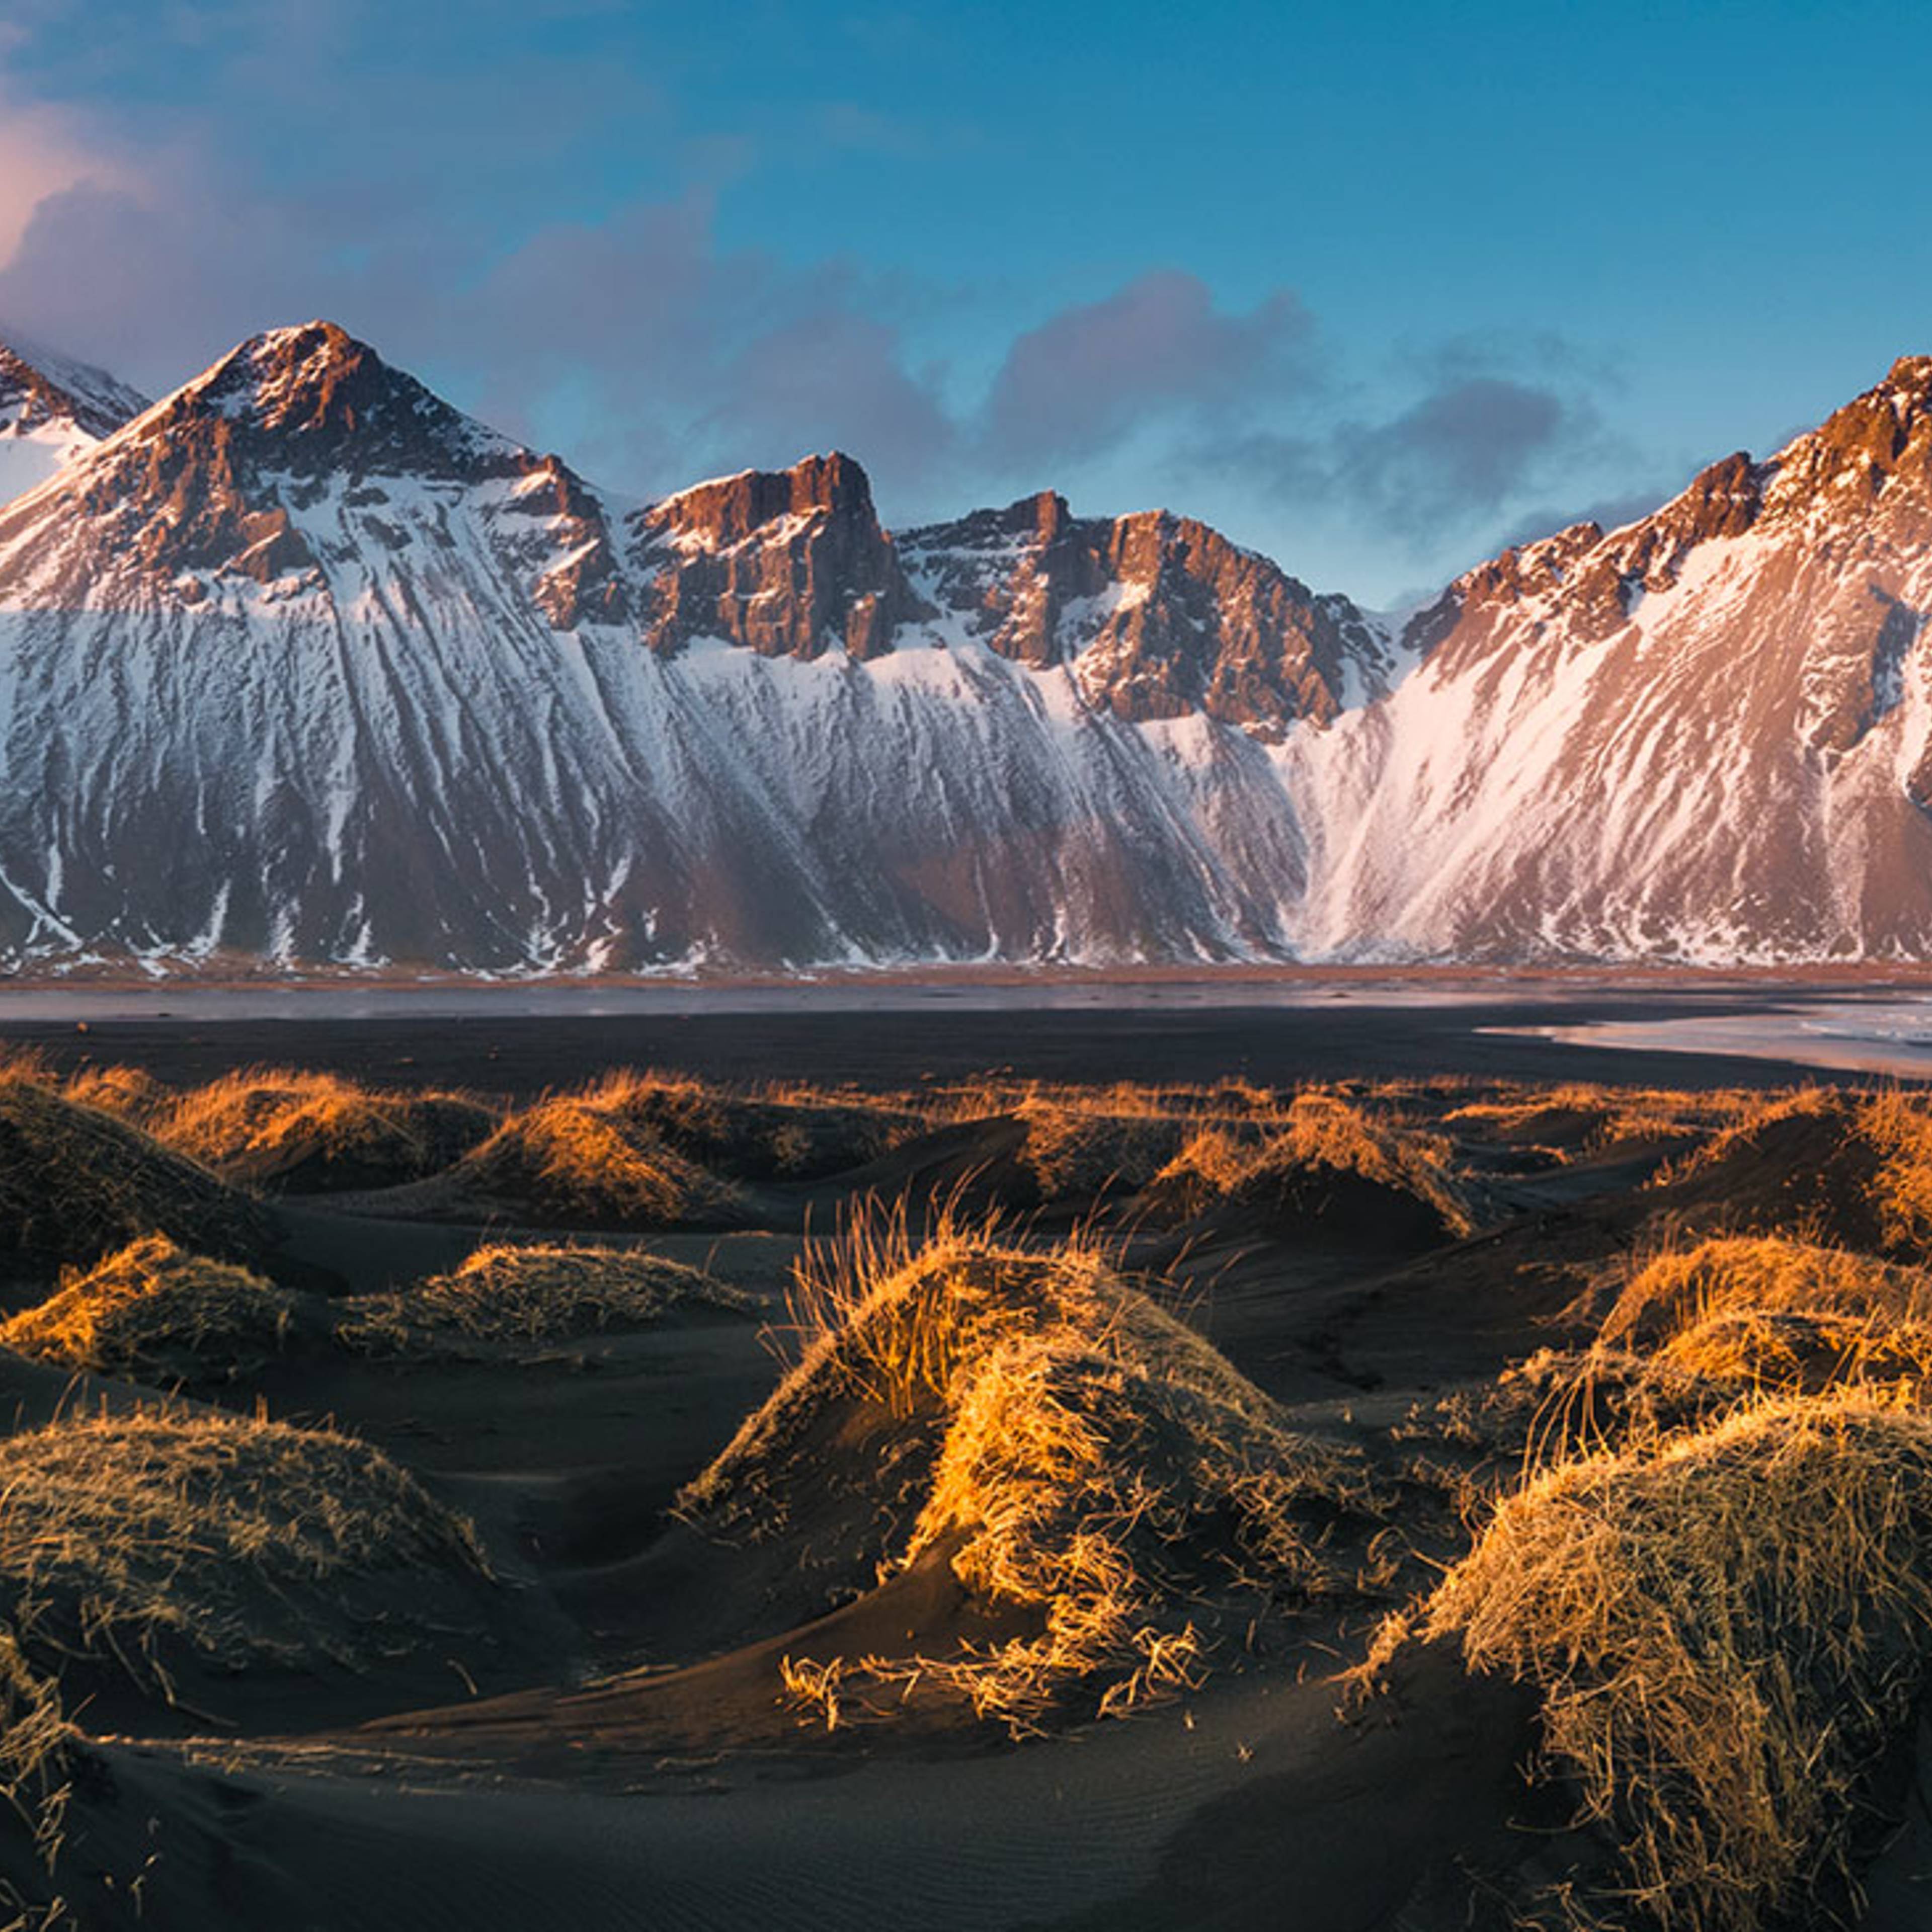 Meine  Zehn Tage nach Island - Reise jetzt individuell gestalten